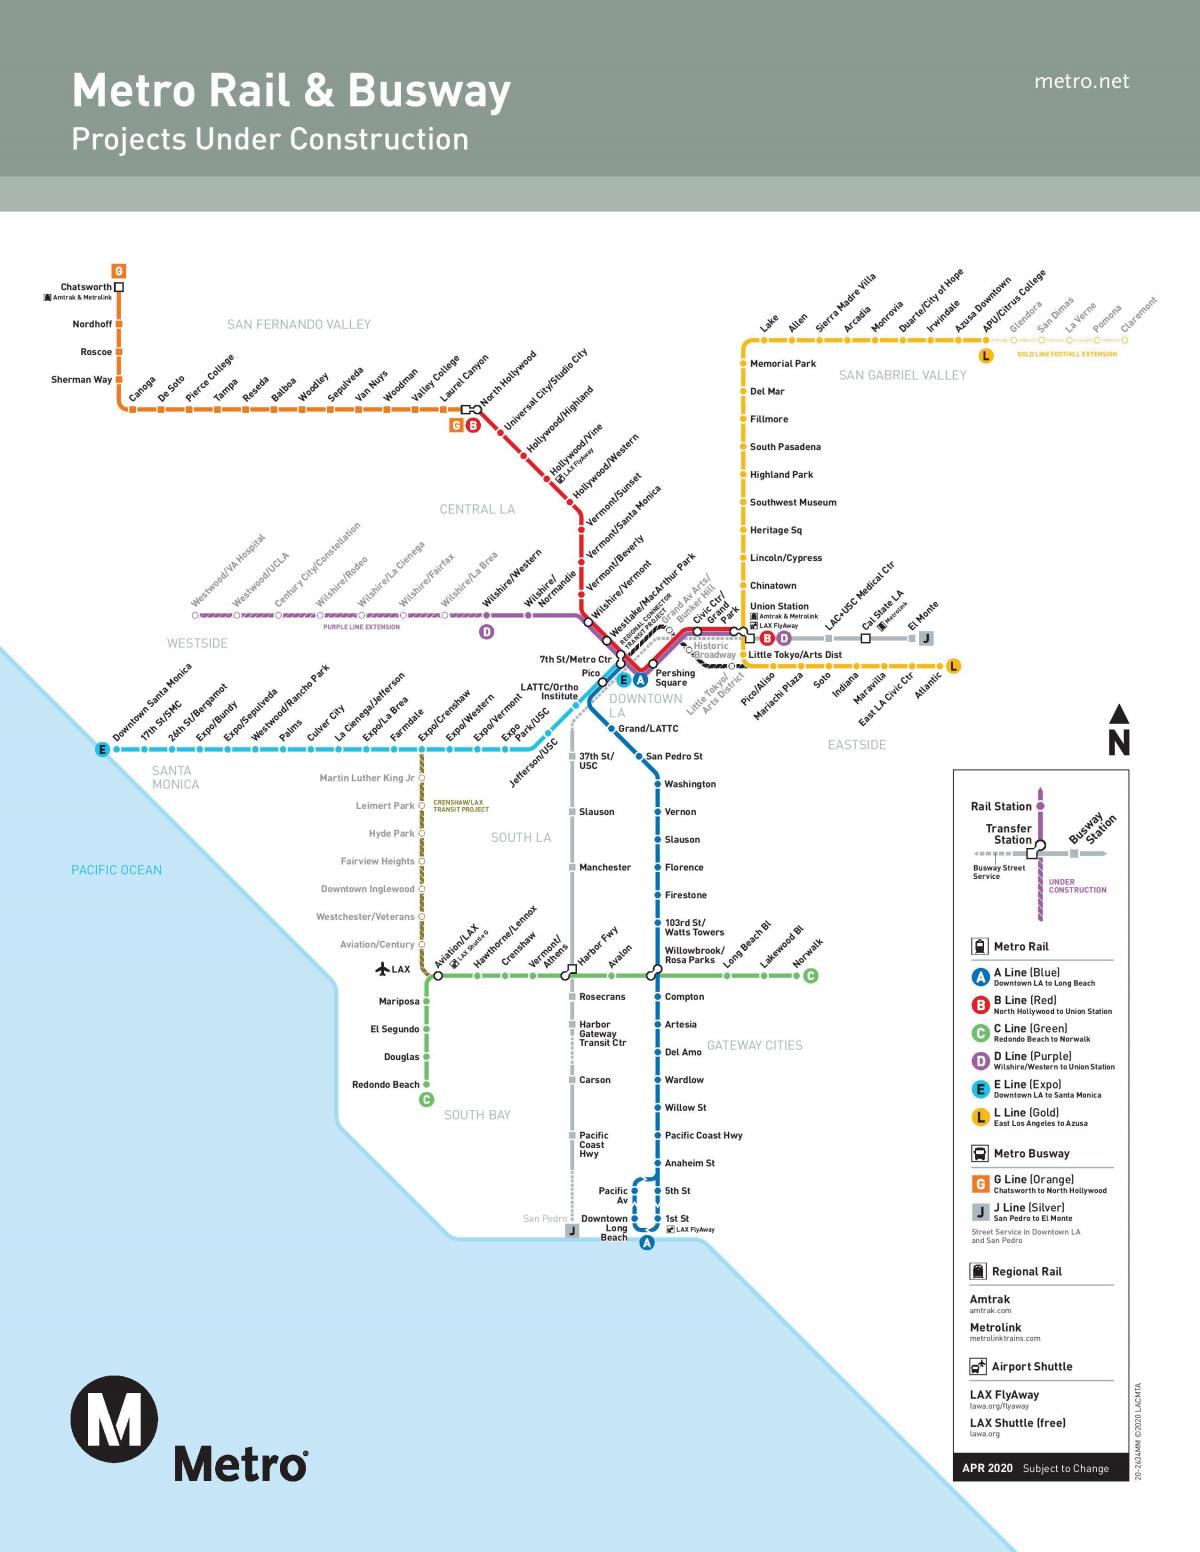 Karte von LA U-Bahn-ausbau 